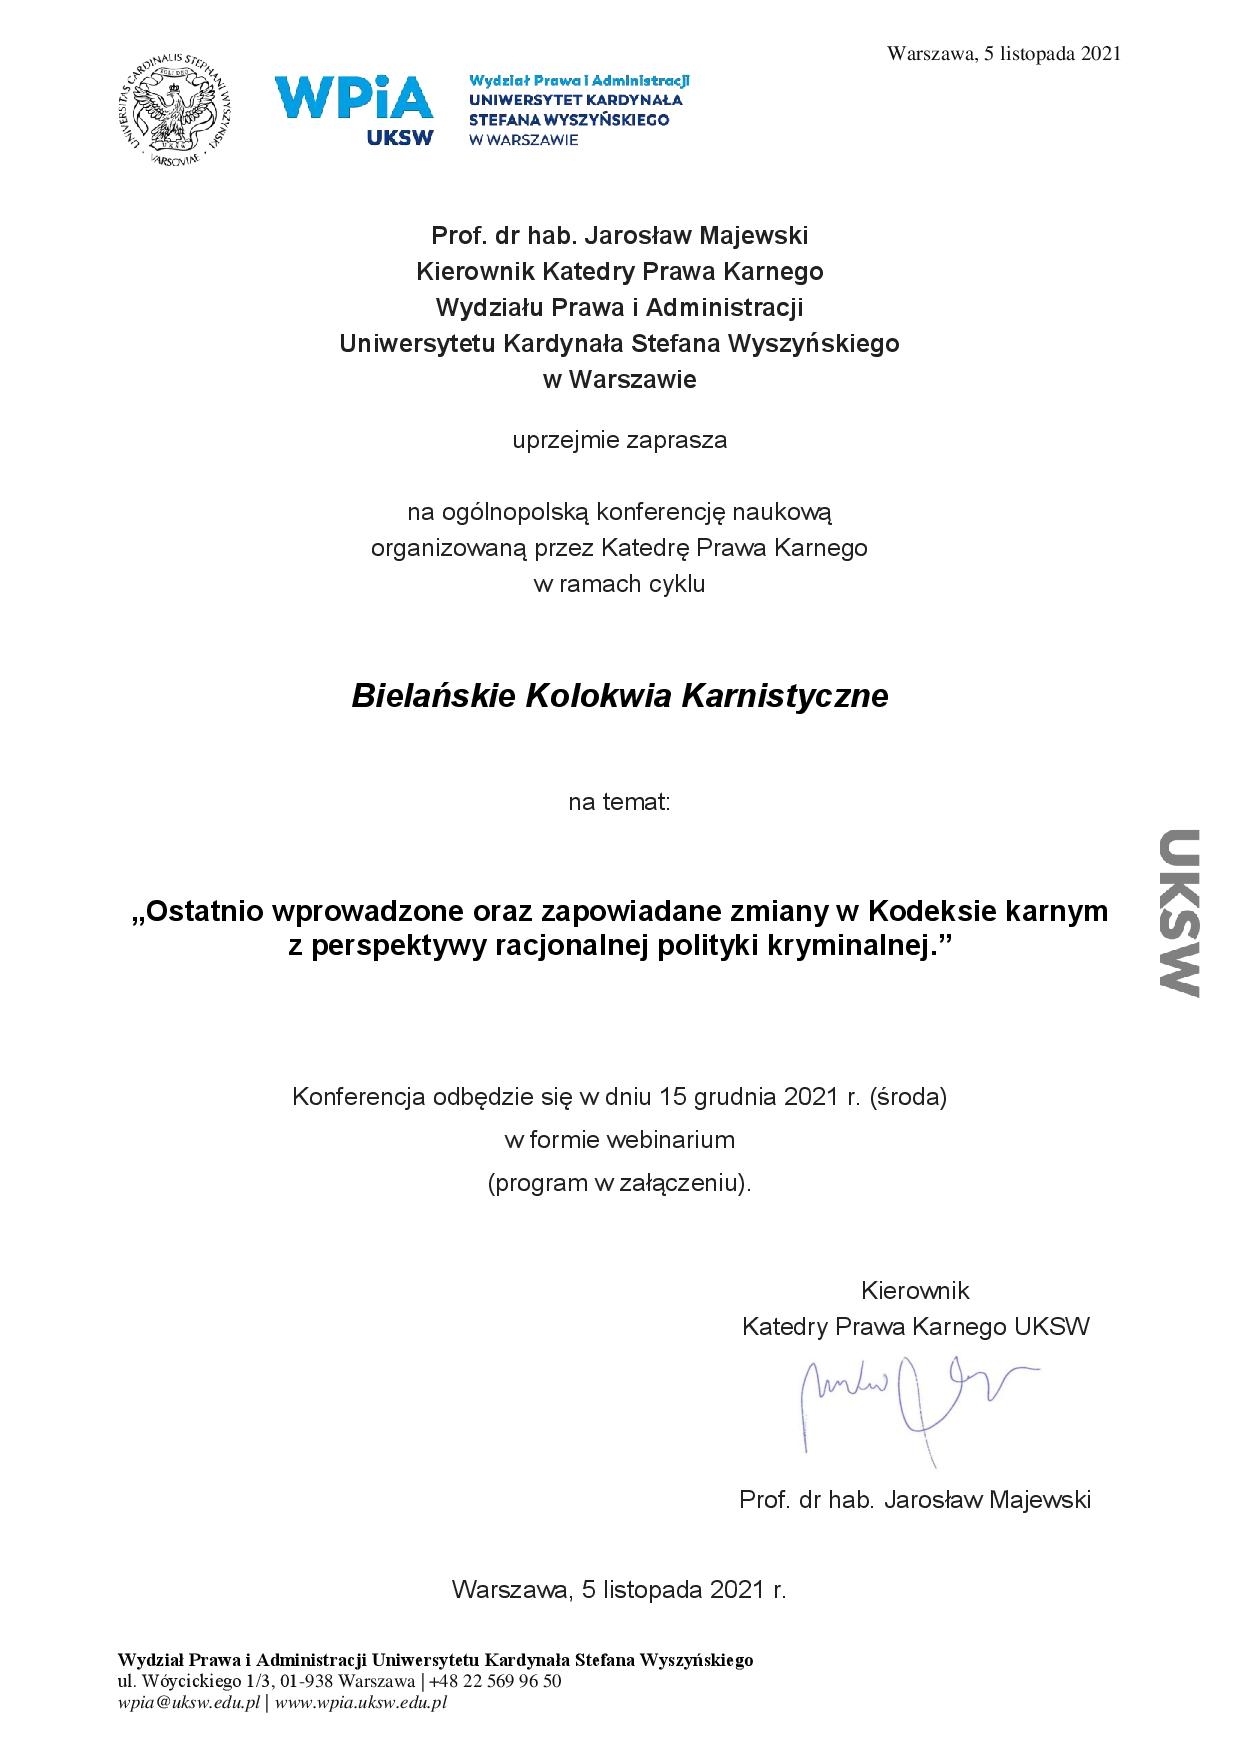 XVIII Bielanskie Kolokwium Karnistyczne - zaproszenie od Kierownika Katedry 2021-page-001.jpg